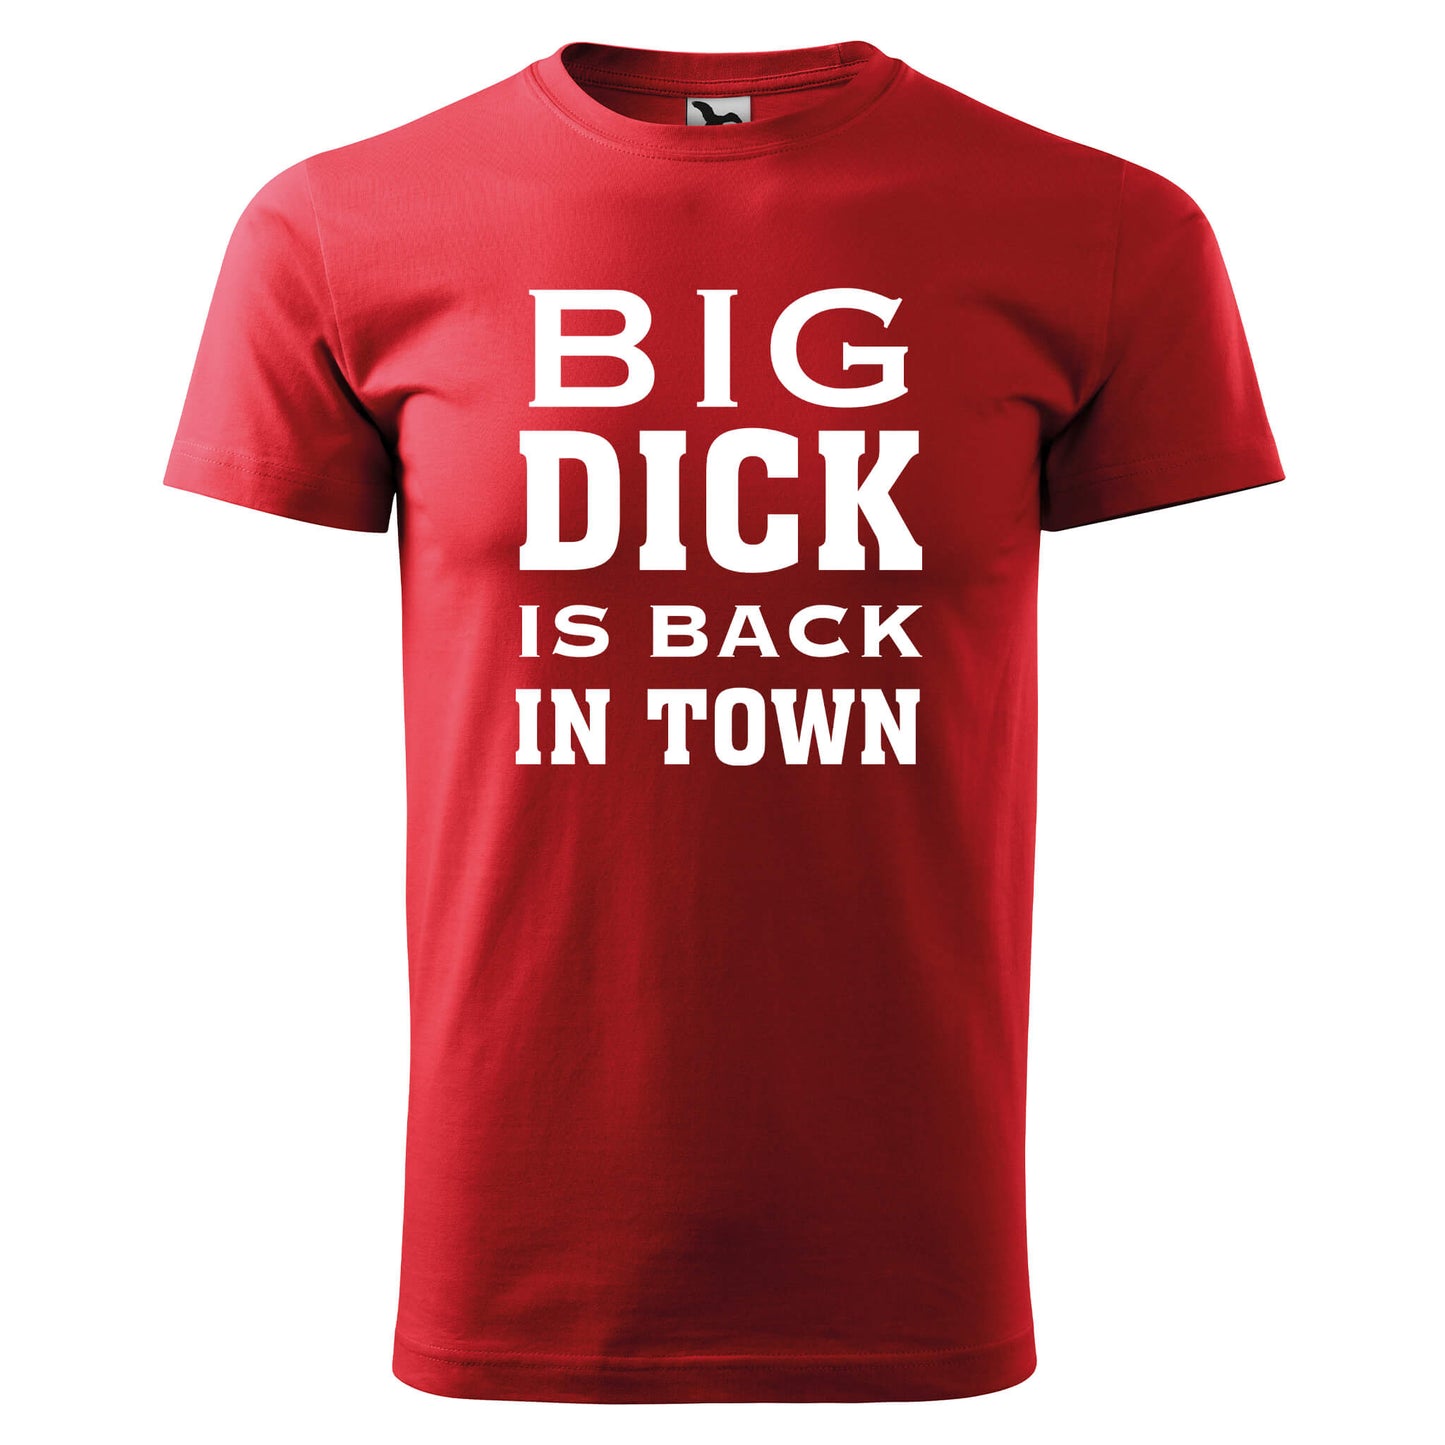 Camiseta - Big dick está de vuelta en la ciudad